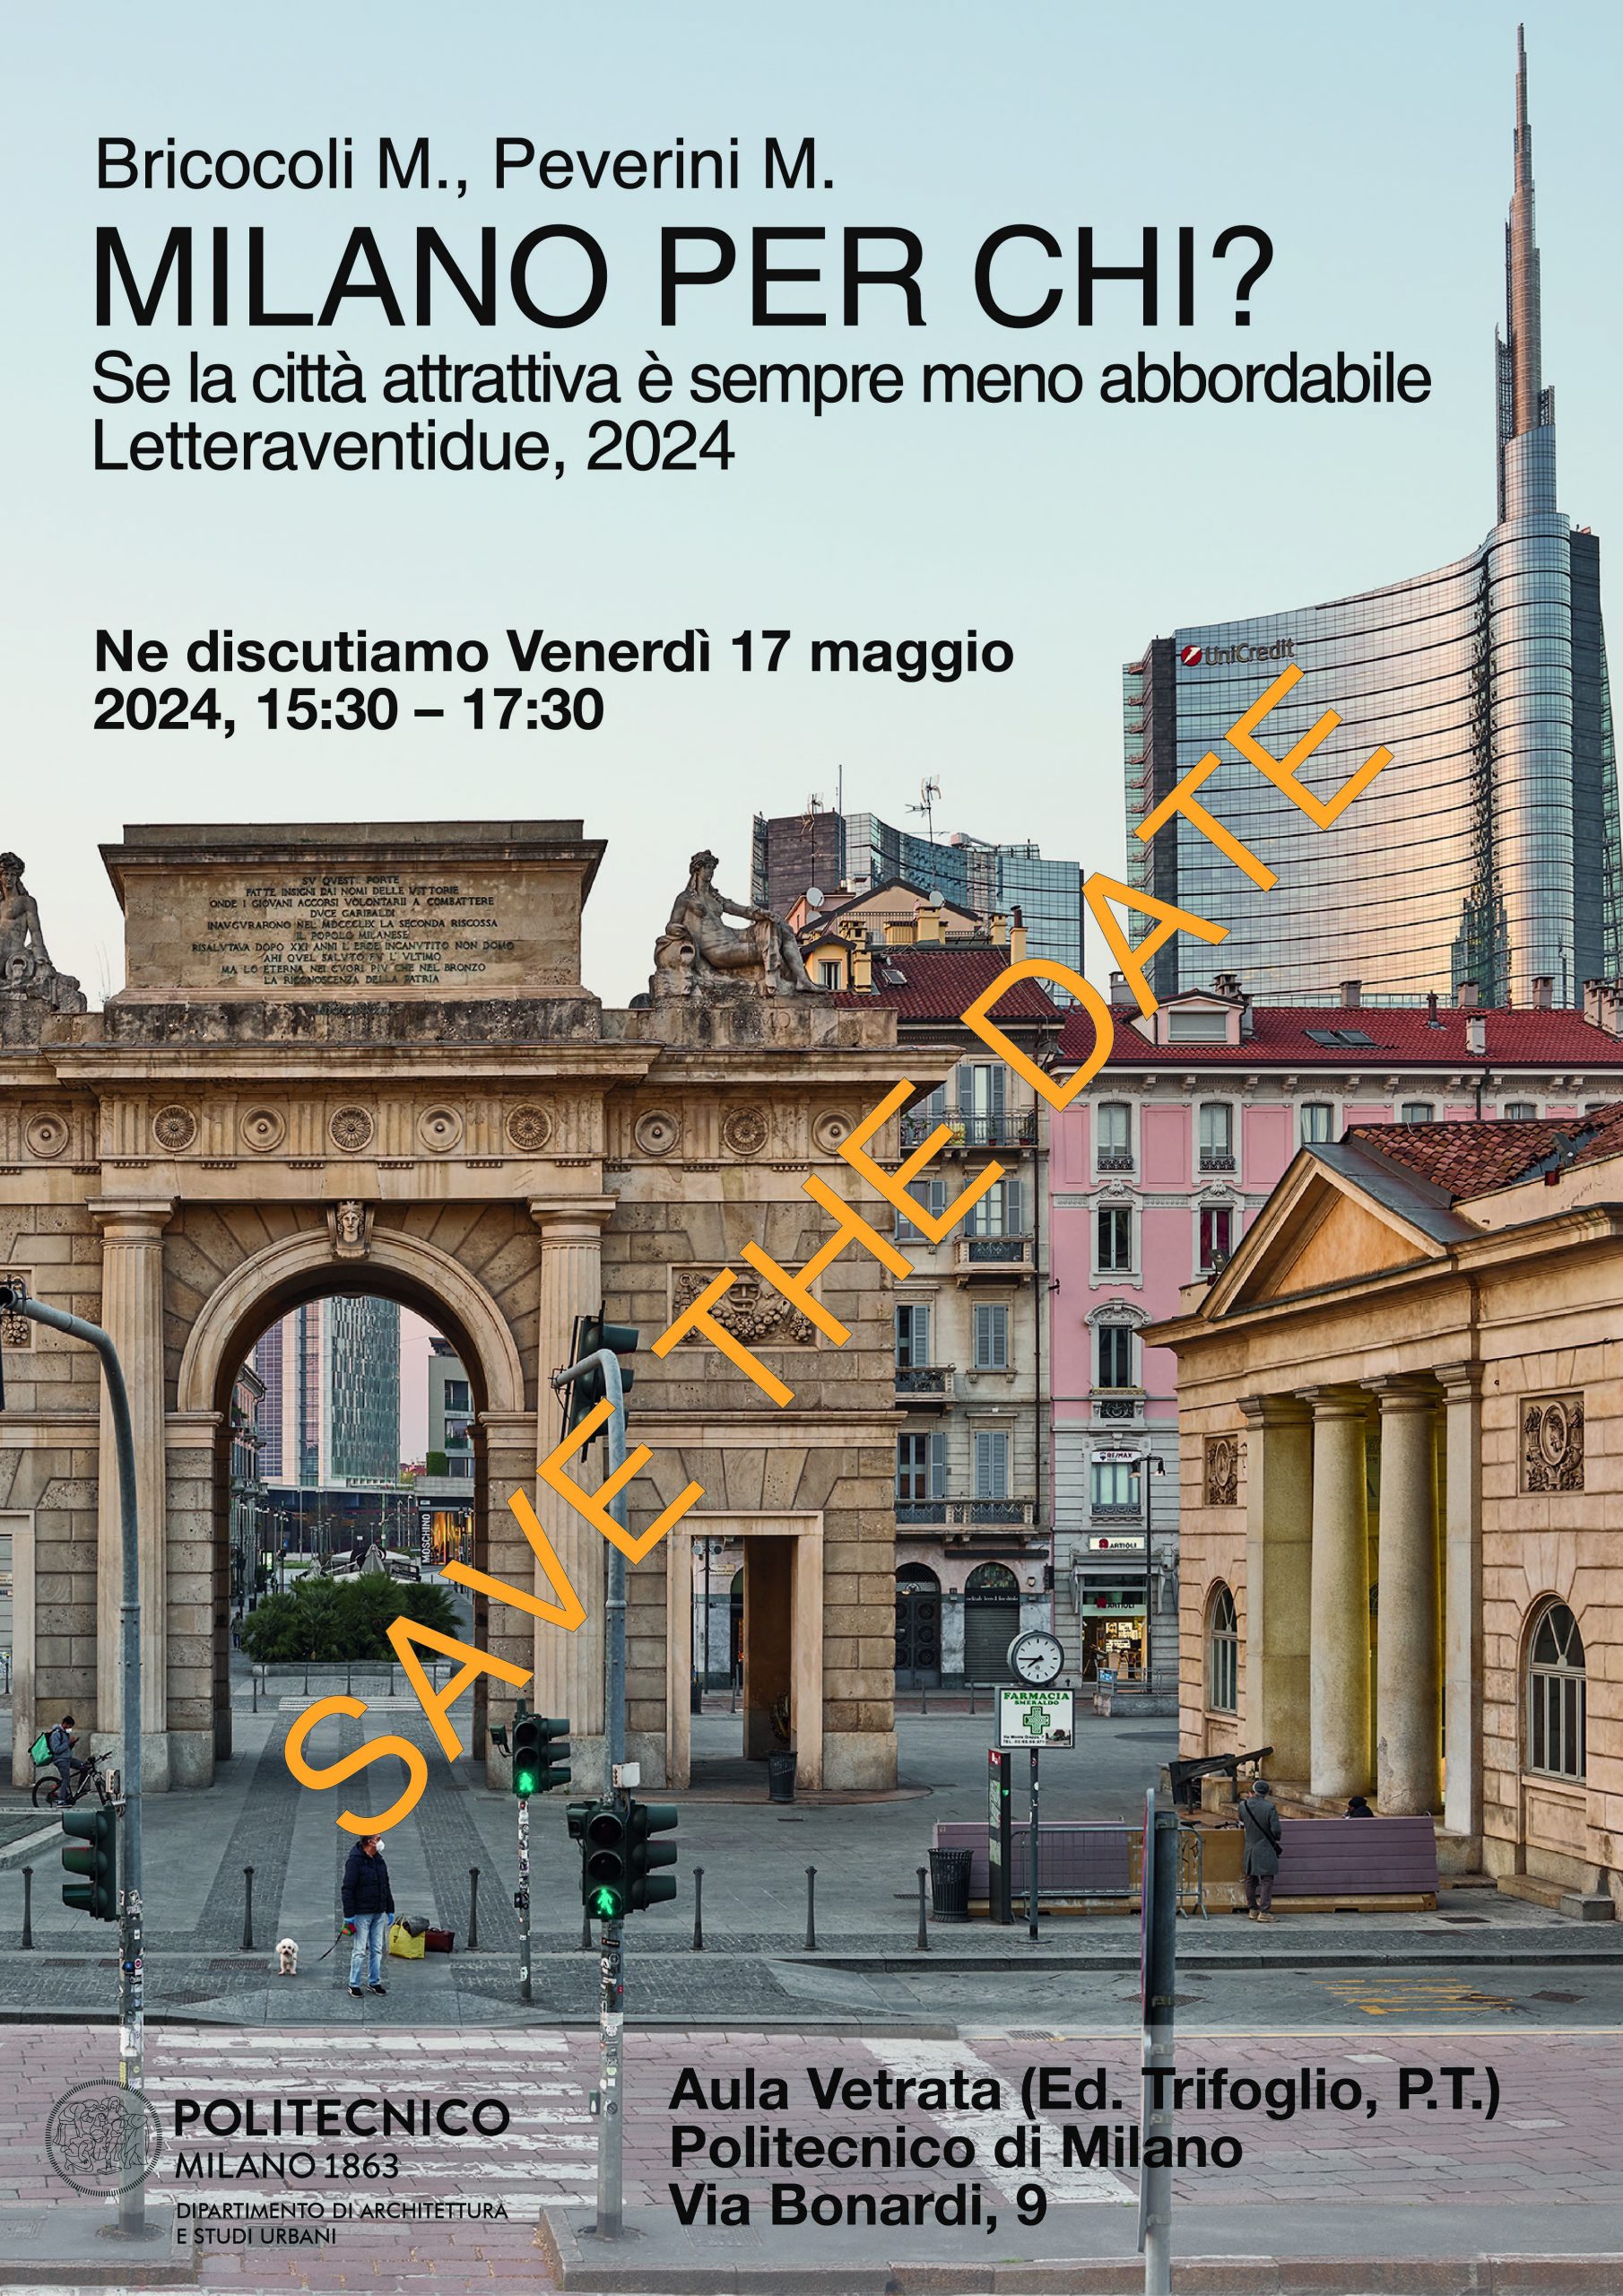 Discussione del libro “Milano per chi?” al Politecnico di Milano (17 maggio, h15.30, aula vetrata trifoglio)